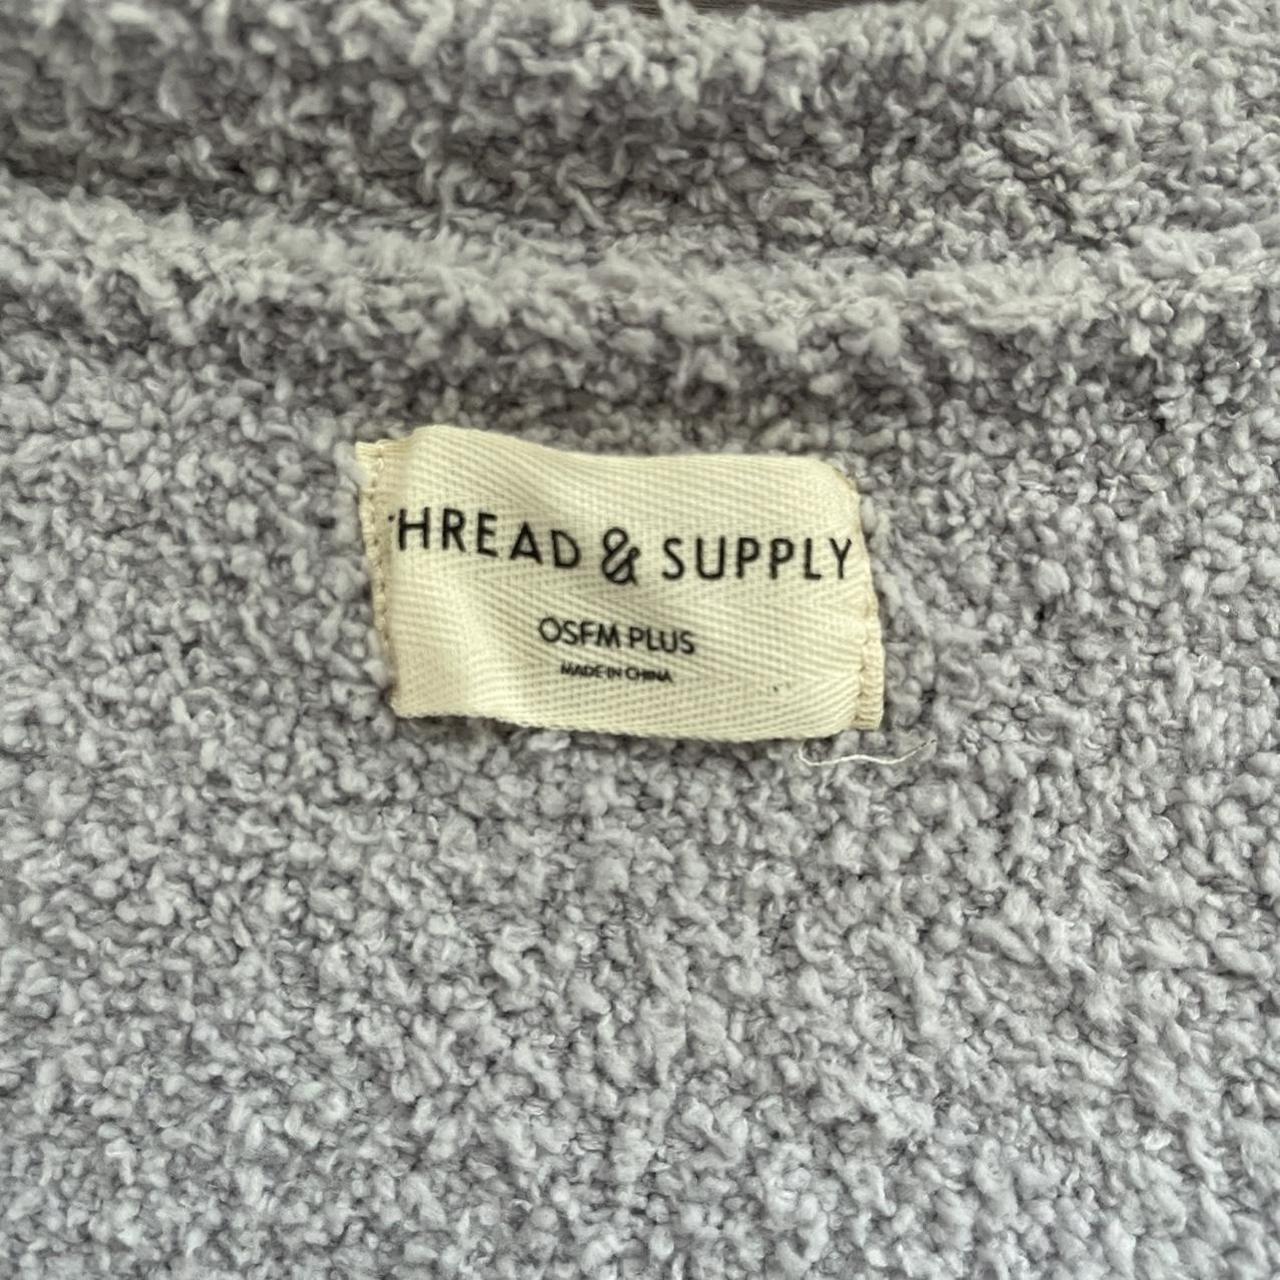 Thread & Supply, Sweaters, Thread Supply Cozy Cardigan Osfm